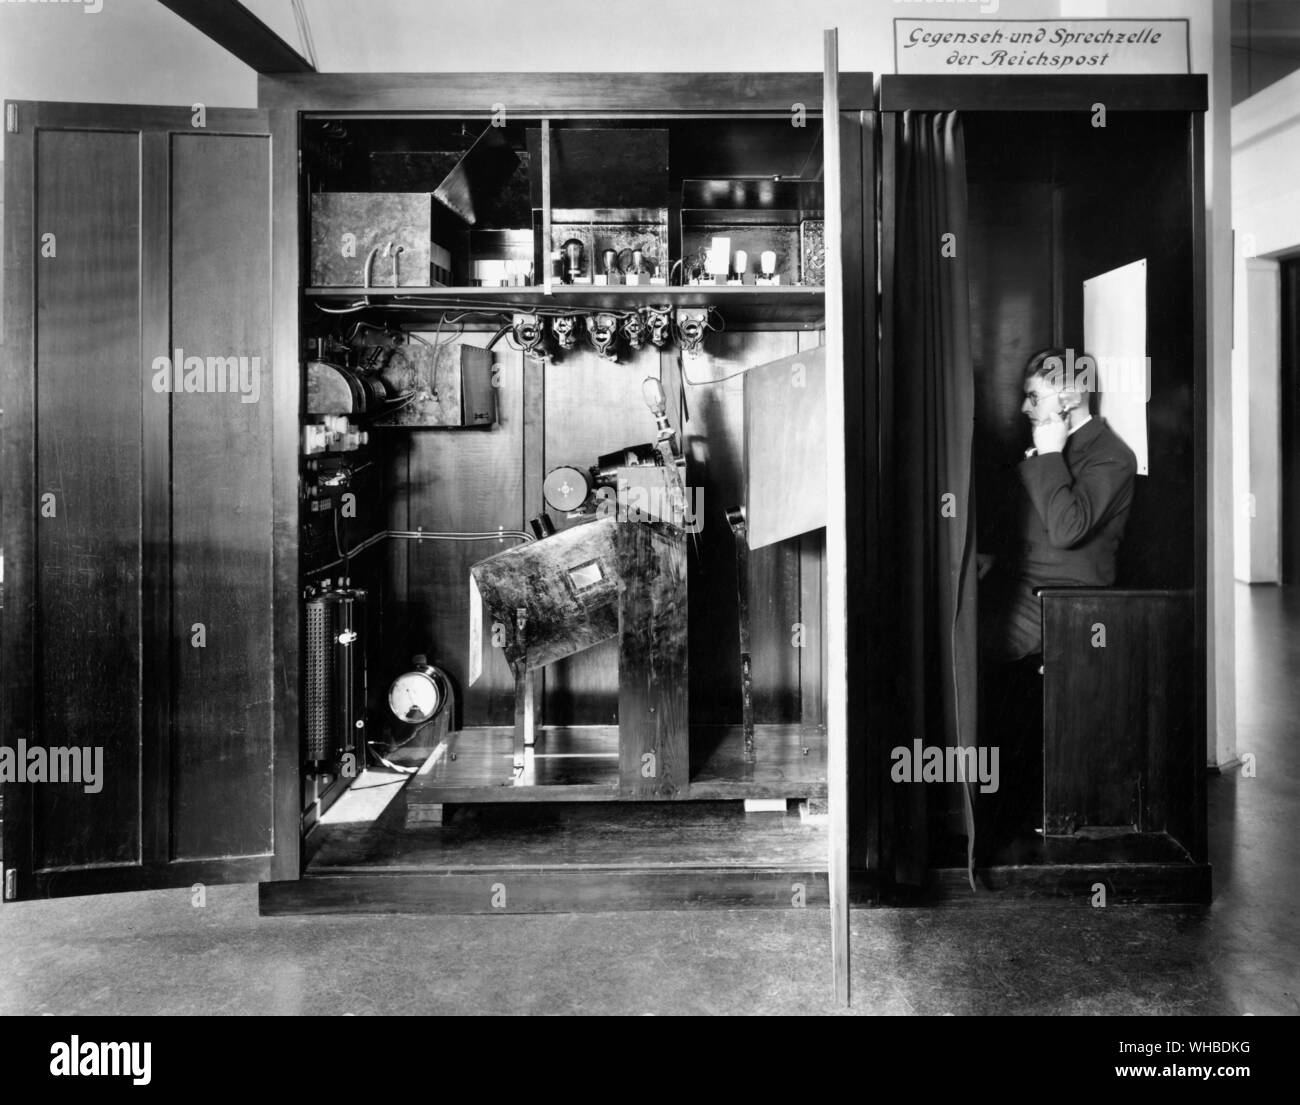 La télévision allemande-téléphone 1929 - Les deux premières voies spectacle son et vision system a été conçu par G. Krawinkel au nom de la Poste Allemande et affichée à l'exposition de radio de Berlin à l'été 1929.. Banque D'Images